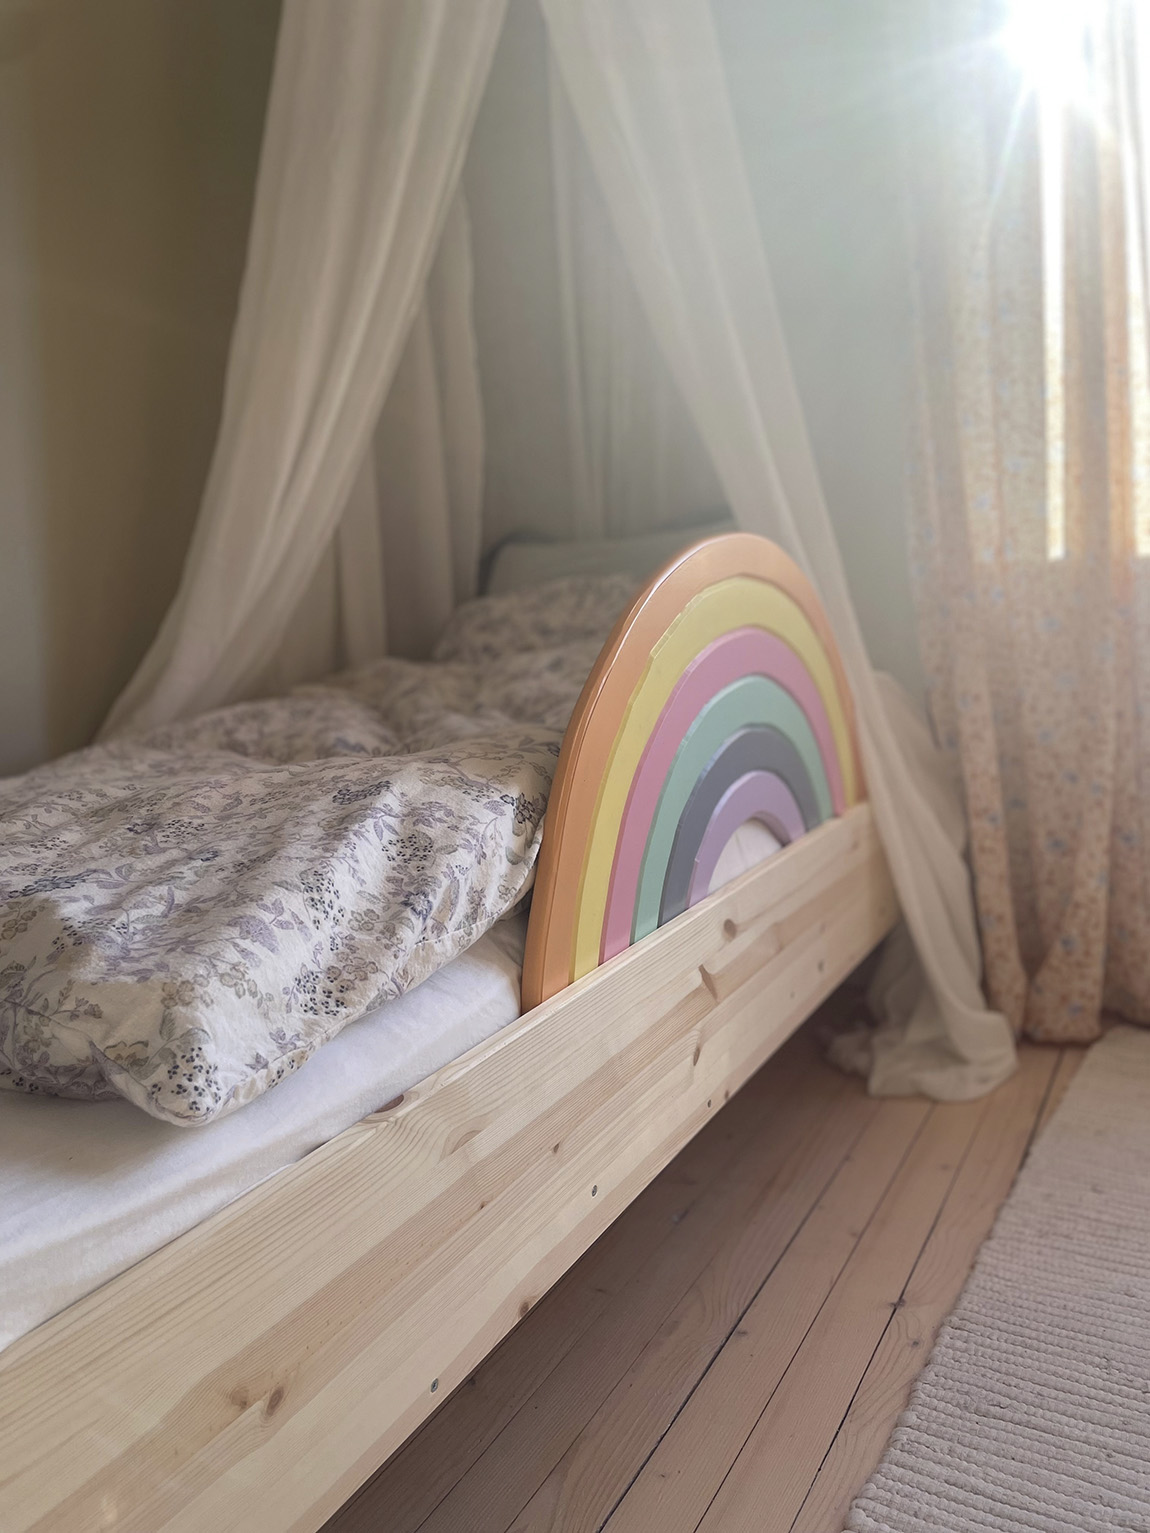 Sengehesten: Sustainable Norwegian design to help kids sleep safely